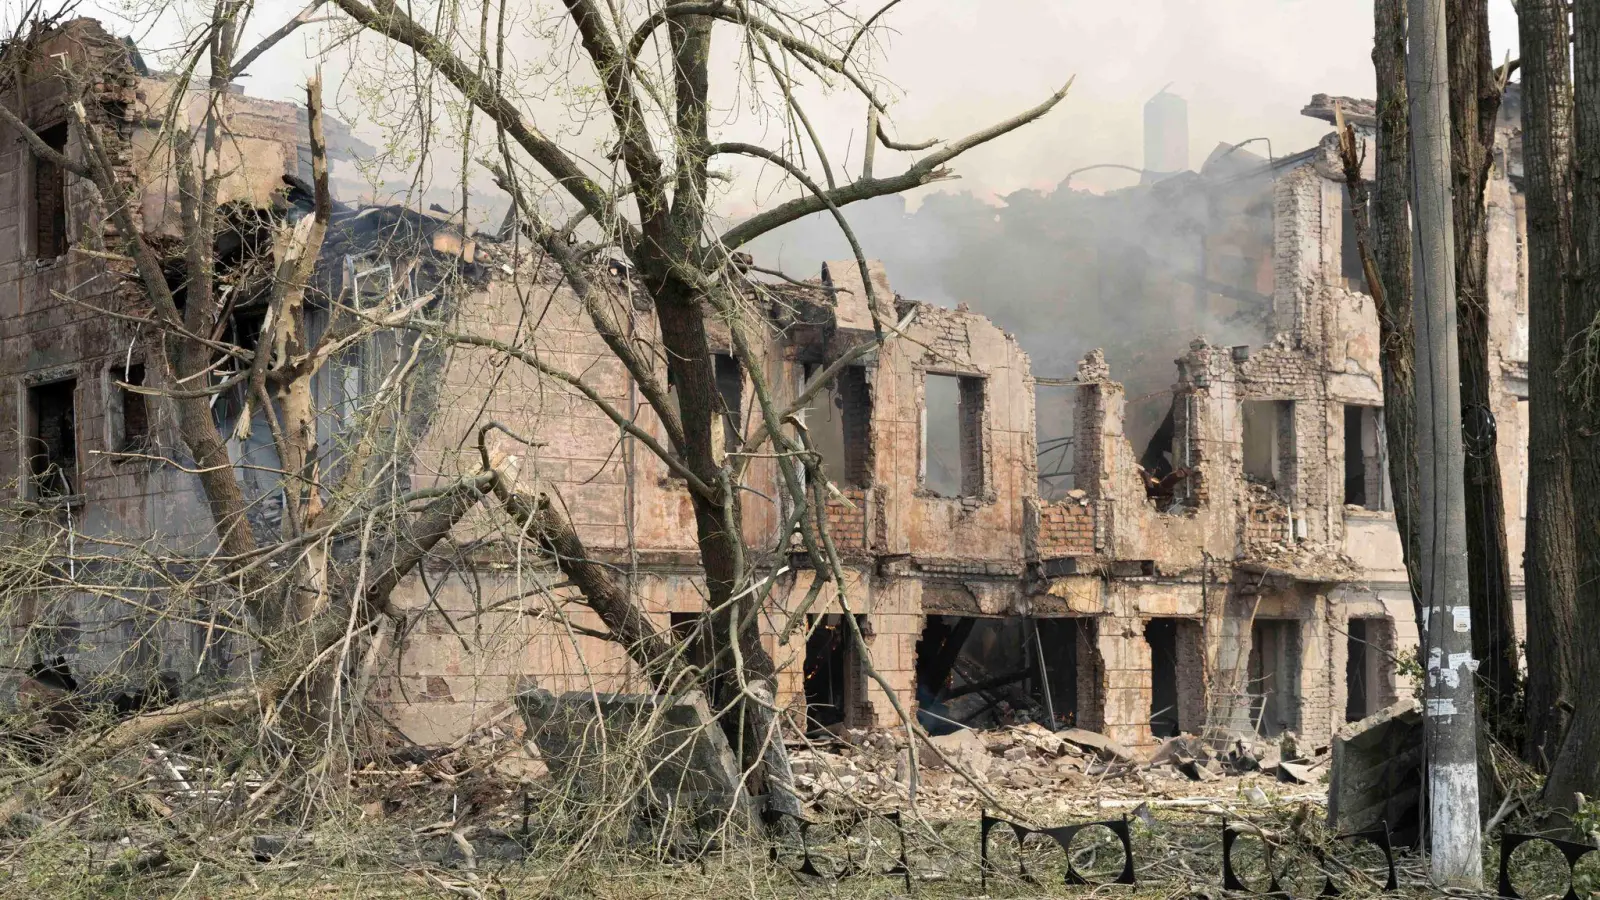 Die Überreste einer Klinik in Dnipro, die durch einen Luftangriff zerstört wurde (Bild vom 26. Mai). (Foto: J. Daniel Hud/ZUMA Press Wire/dpa)